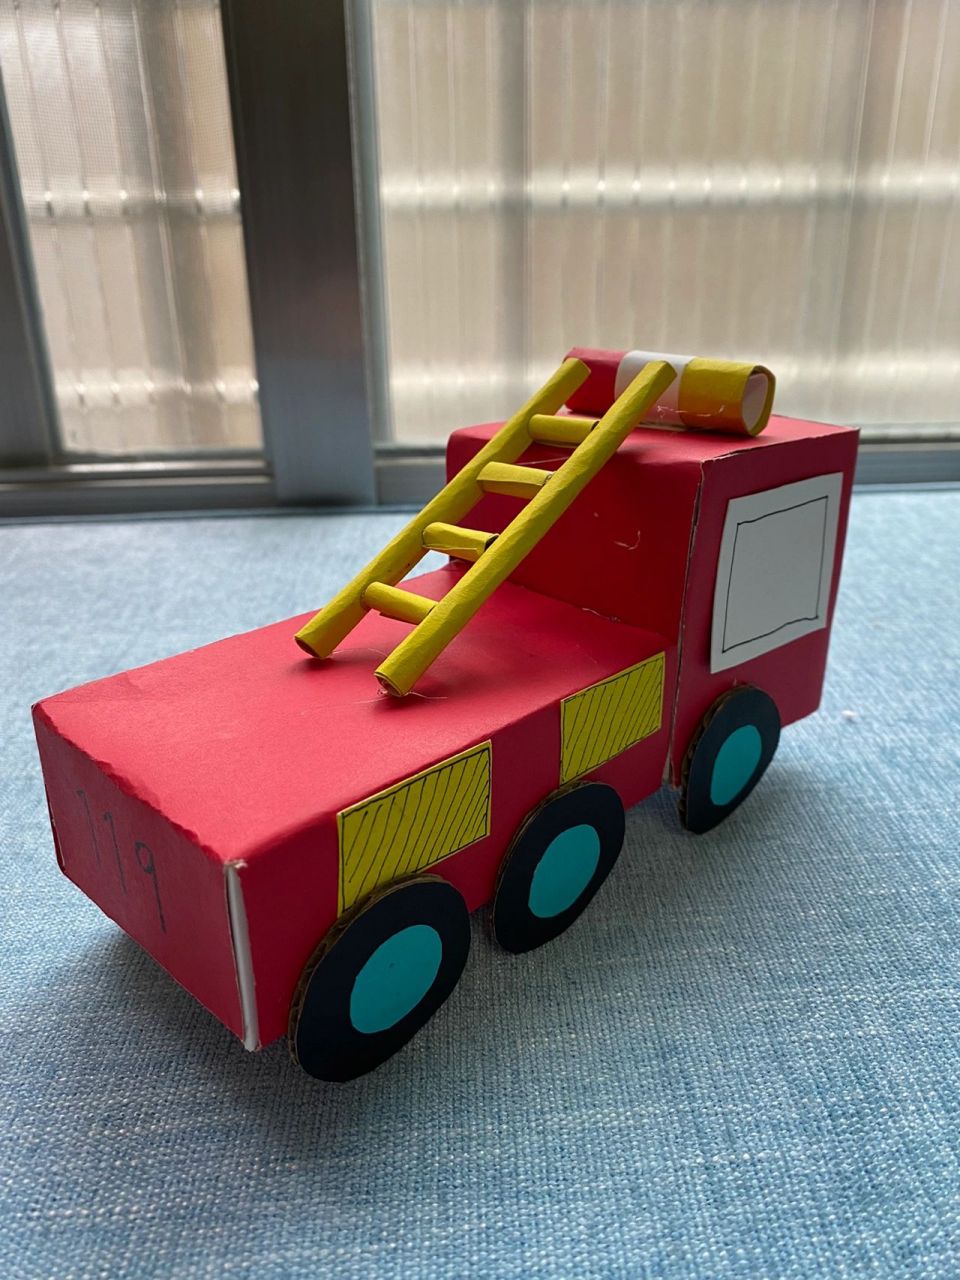 幼儿园手工汽车  119消防车 分享给有需要的人 材料:卡纸,空纸盒,胶水